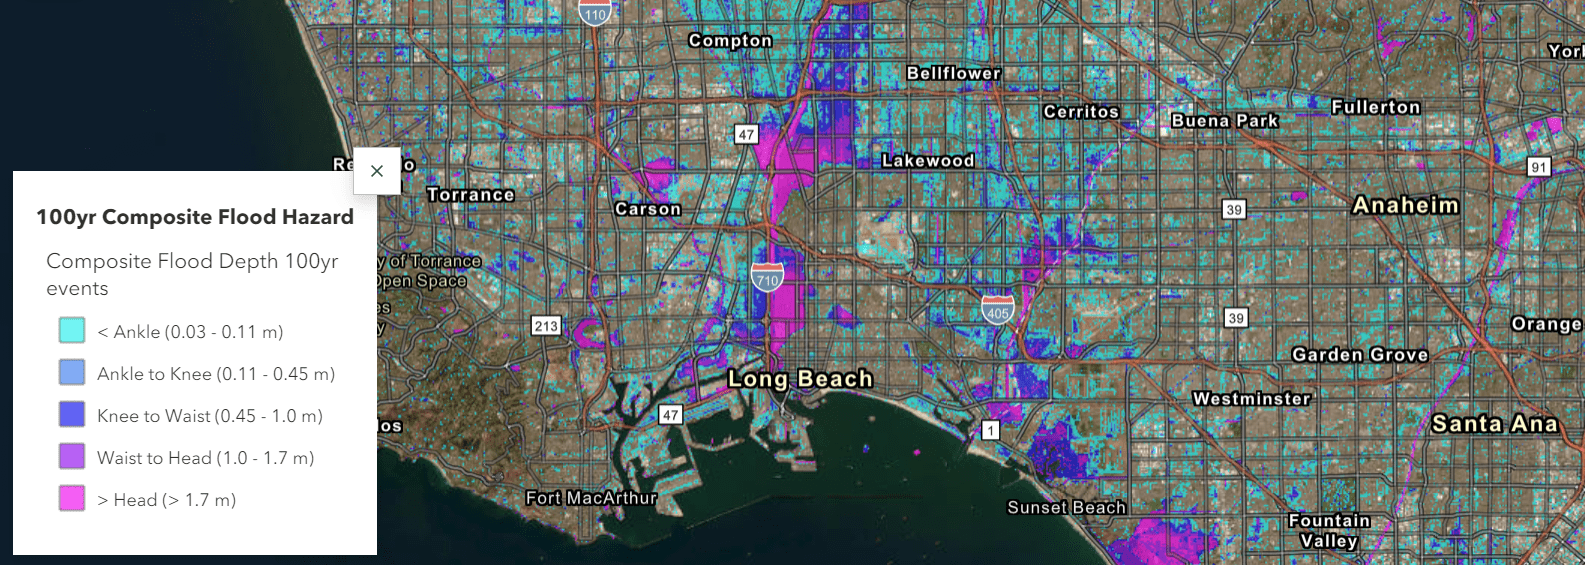 A screenshot of 100-year composite flood hazard map.